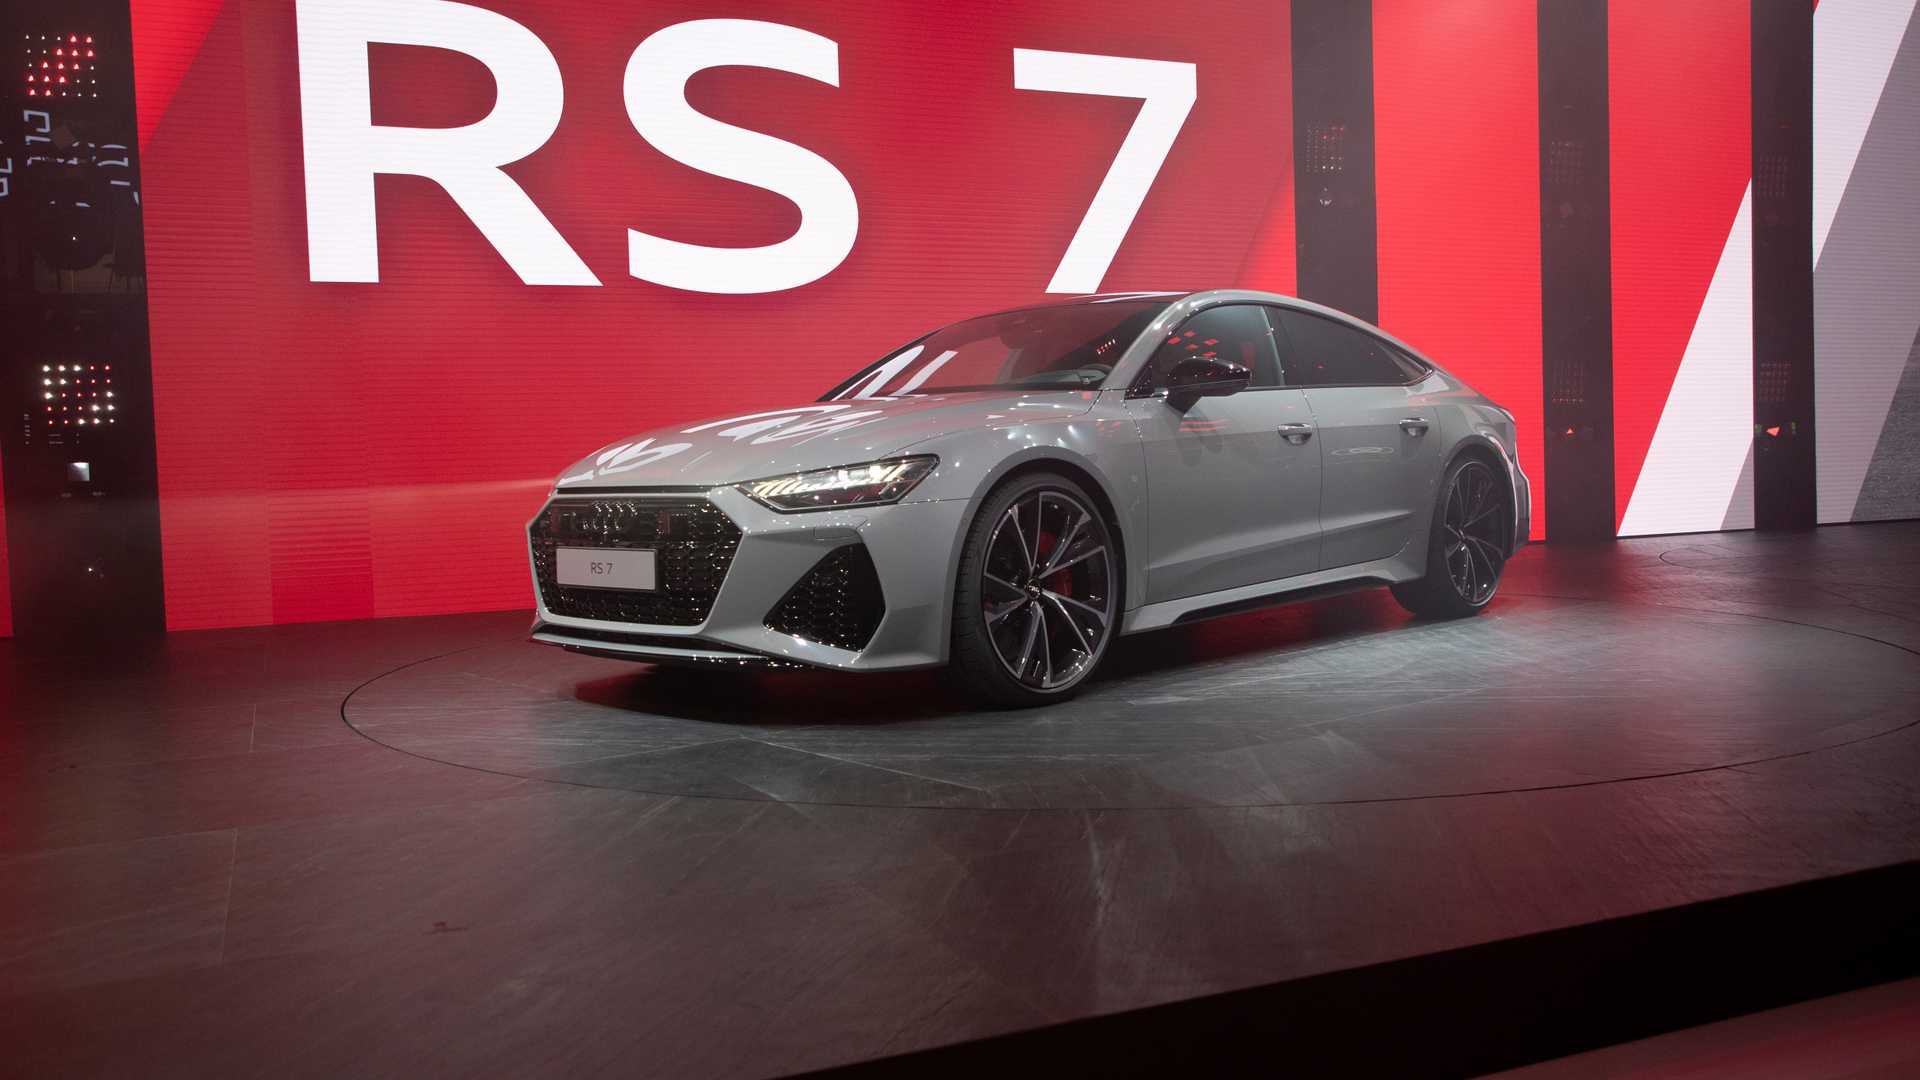 Audi RS7 Sportback 2020 ra mắt tại triển lãm Frankfurt Motor Show 2019 đang diễn ra tại Đức